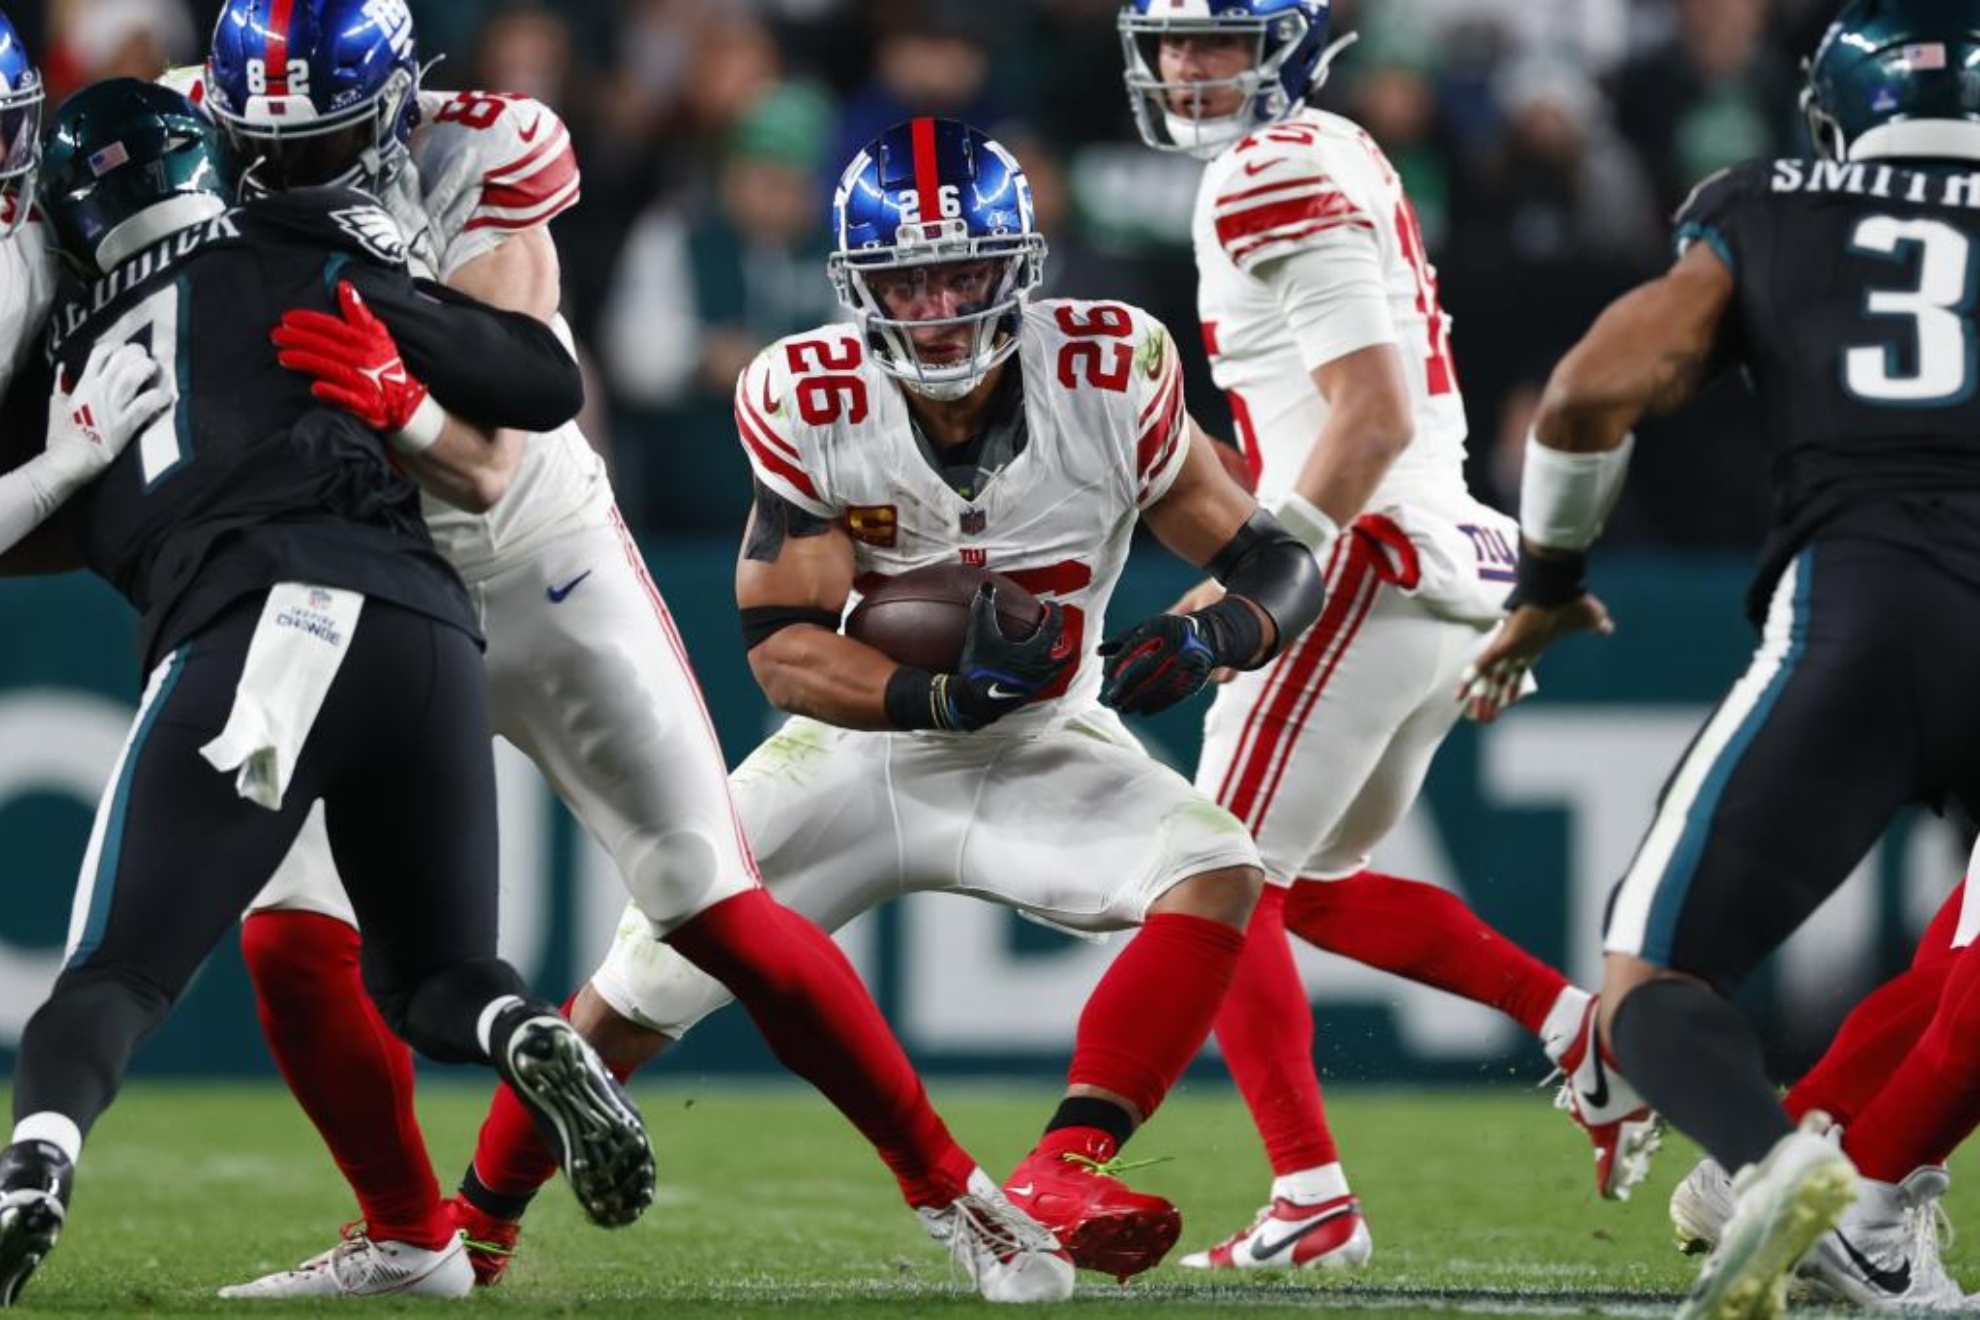 Traici�n en la NFL: Barkley deja los Giants... y ficha por Philadelphia